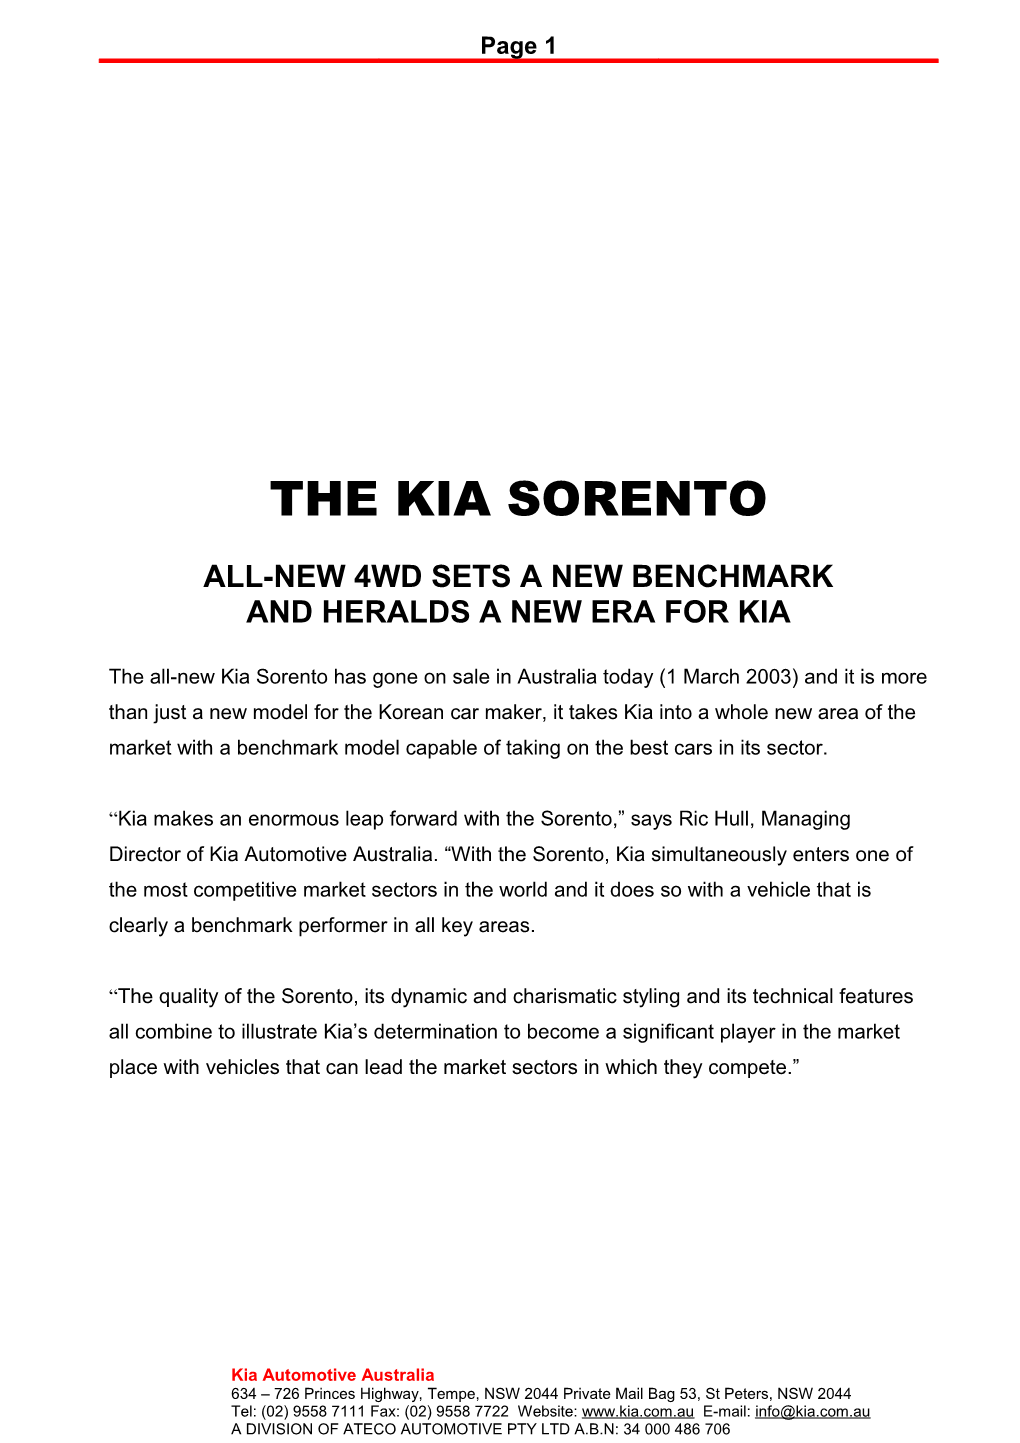 The Kia Rio a New Bench Mark in The